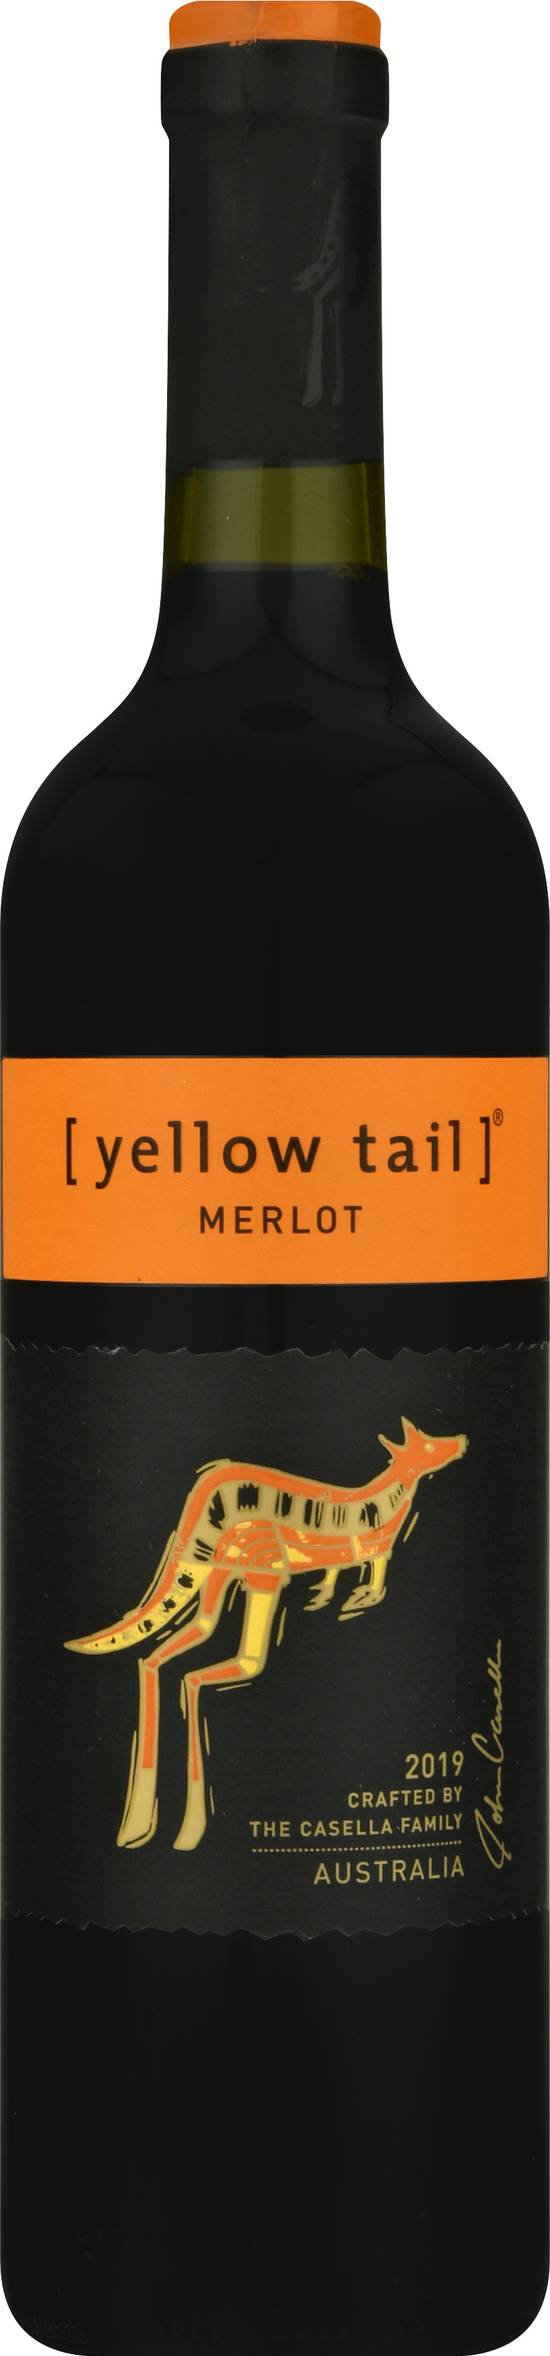 Yellow Tail Australia Merlot Wine 2019 (750 ml)